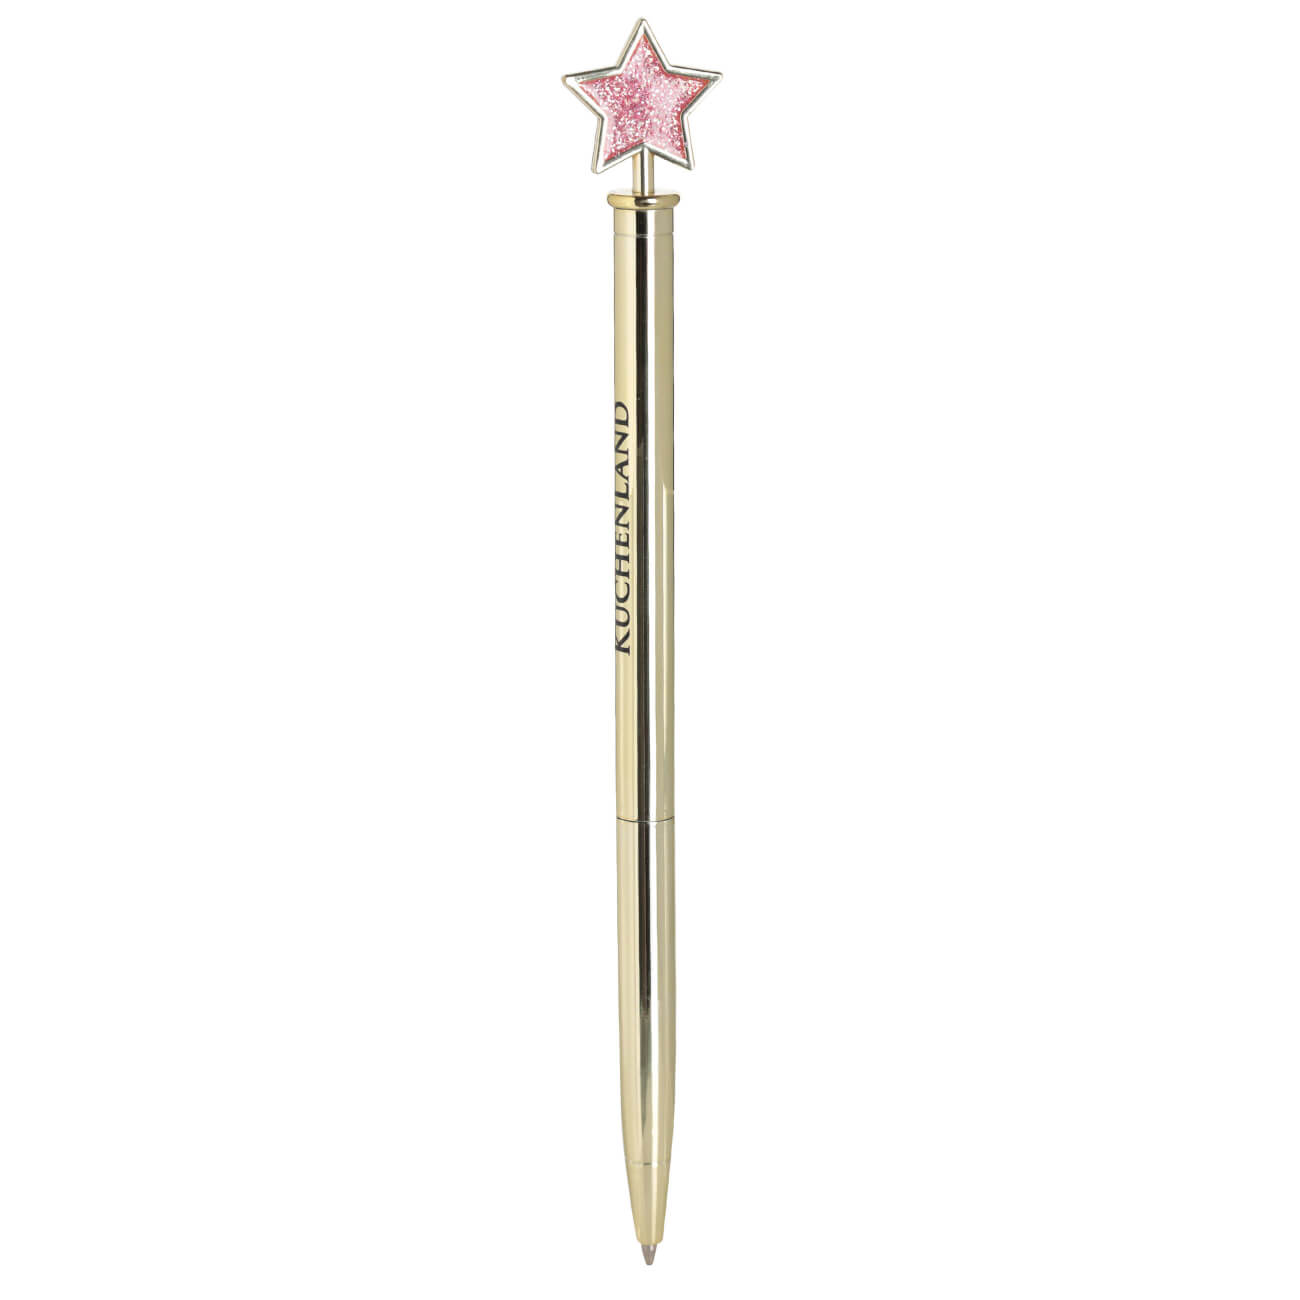 Ручка шариковая, 15 см, с фигуркой, металл, золотистая, Звезда, Draw figure